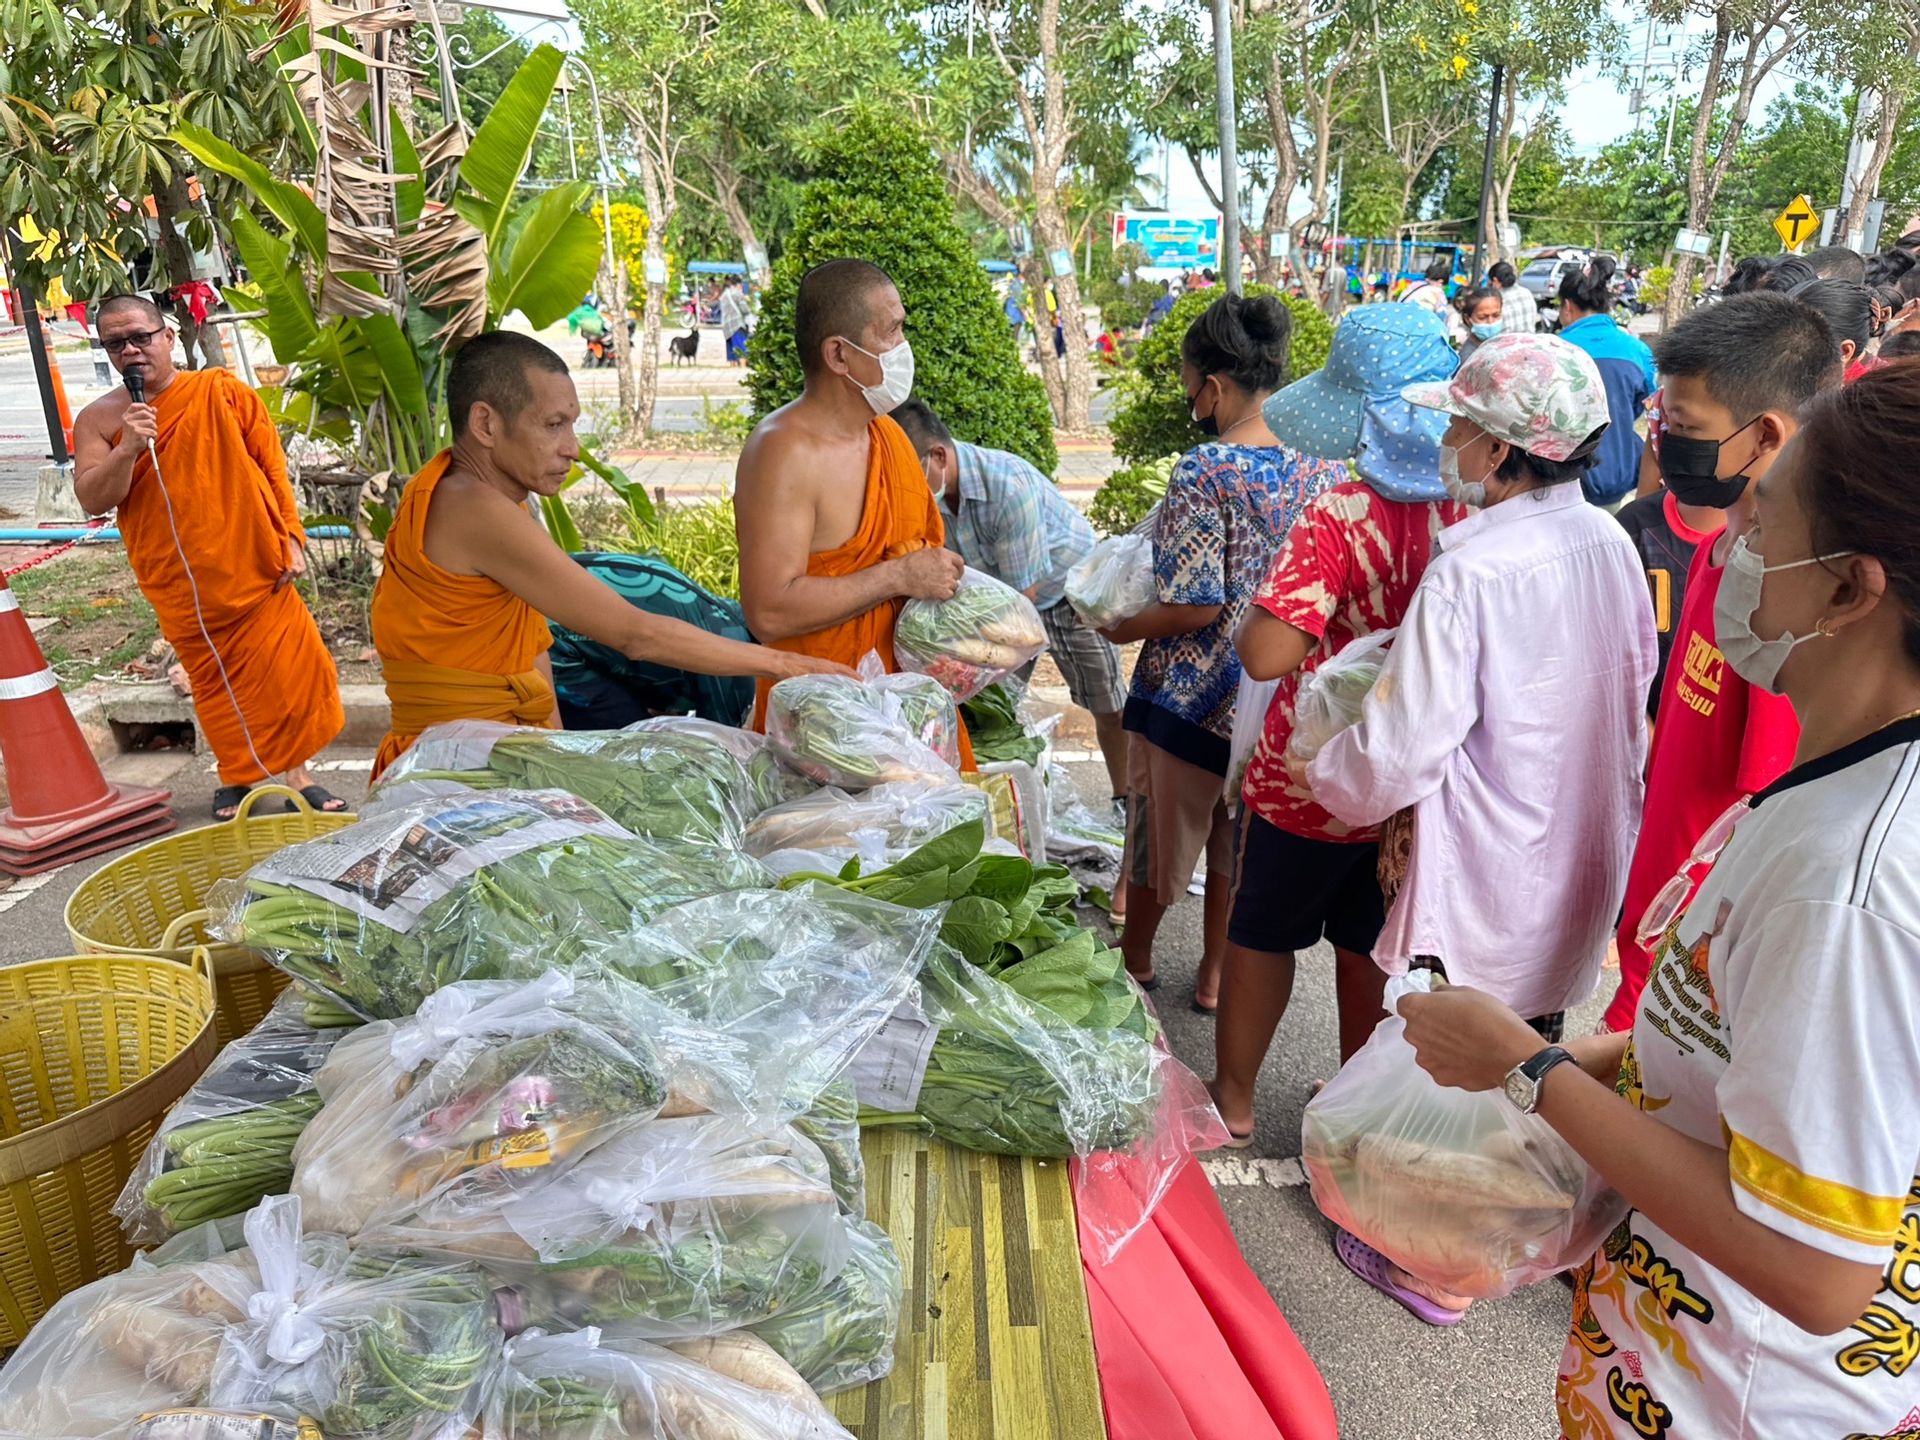 สงฆ์ไทยไม่ทิ้งประชาชน โดย หลวงพ่อแดง นันทิโย จัดโครงการแจกผักปันสุข เป็นสัปดาห์ที่ 151 ช่วยเหลือผู้มีรายได้น้อย 